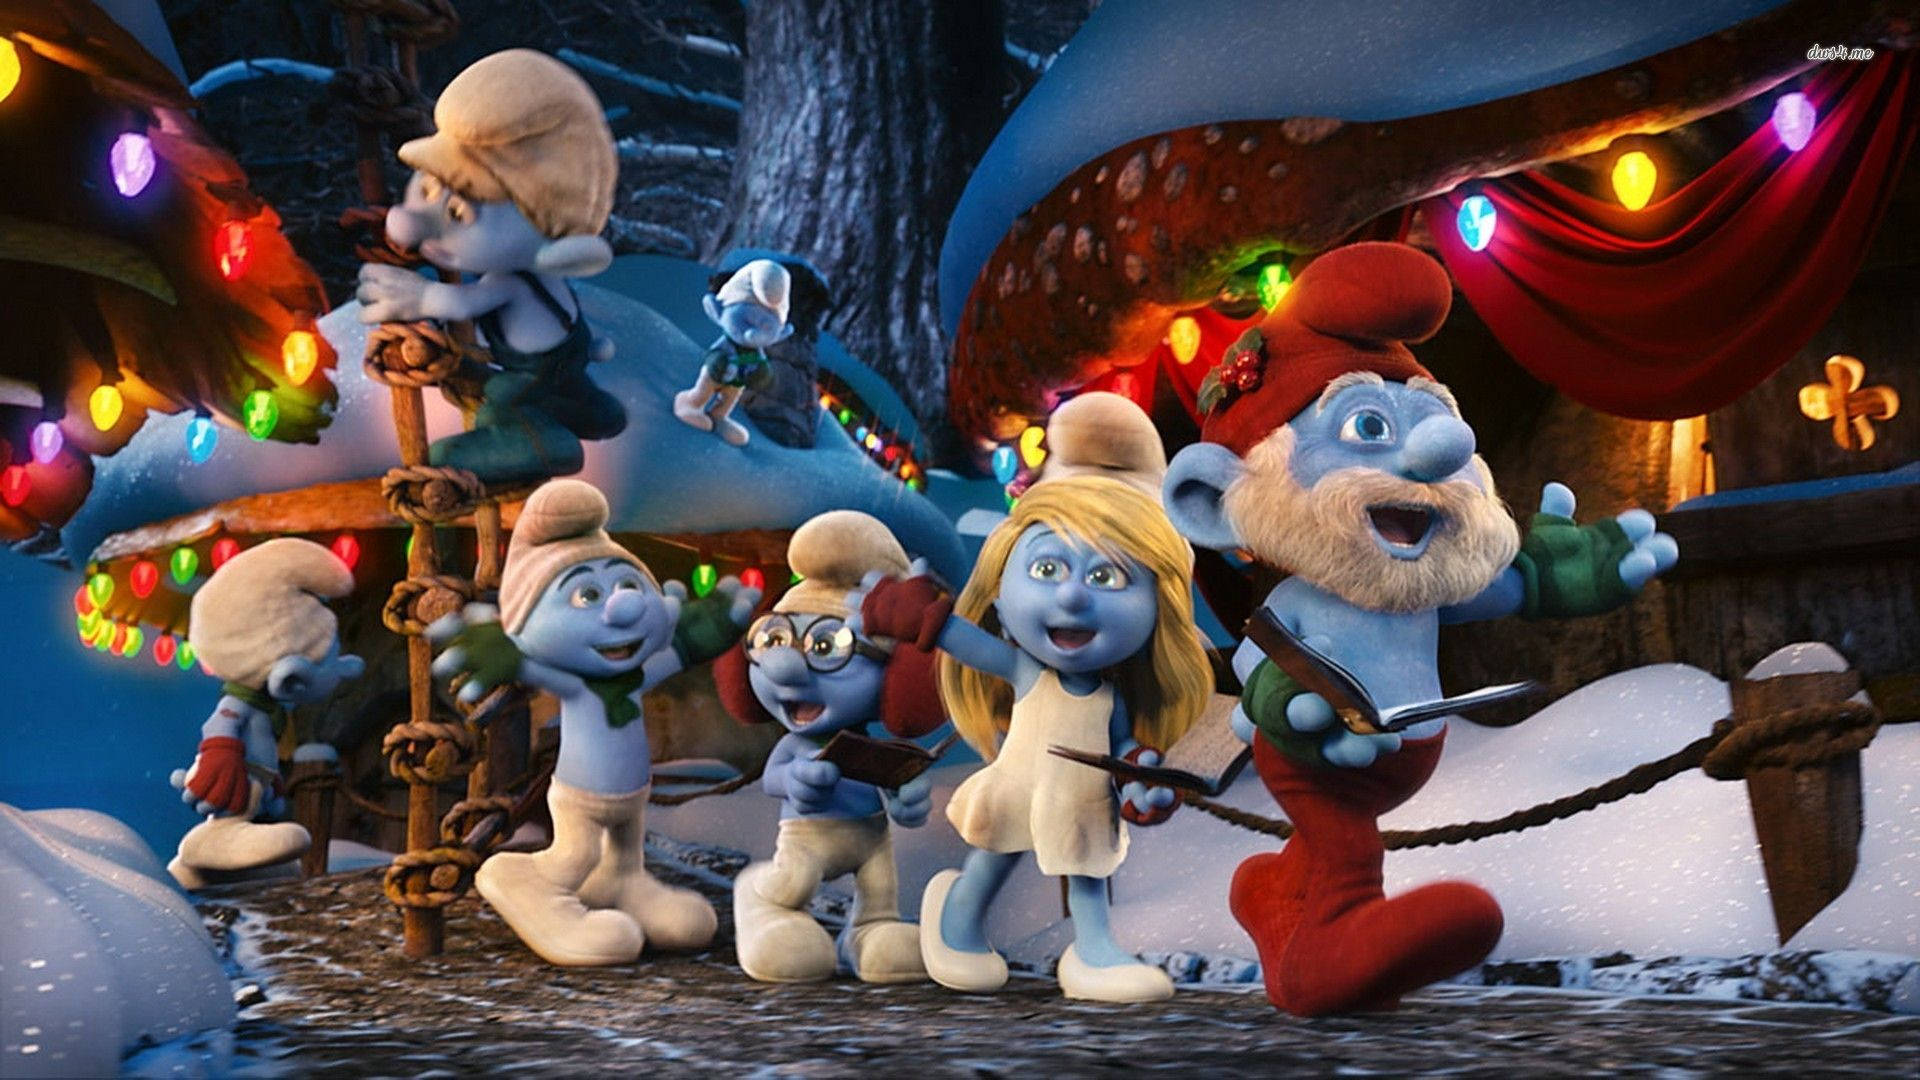 The Smurfs A Christmas Carol